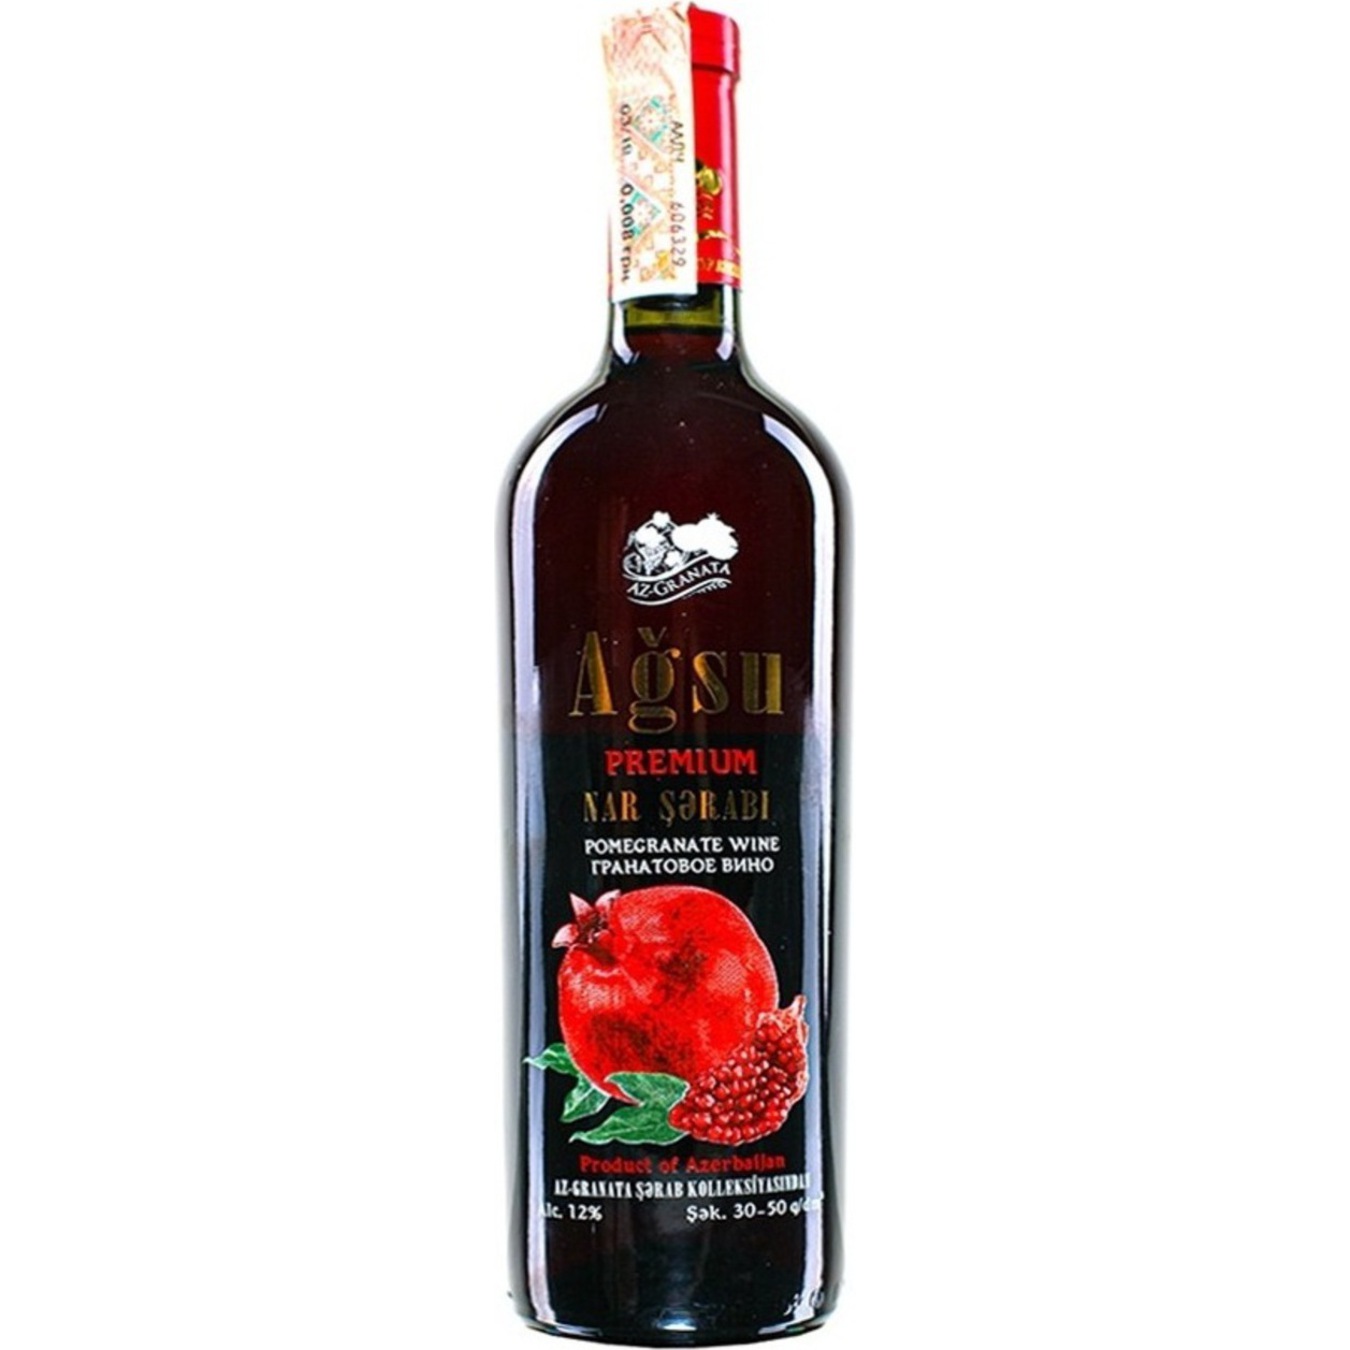 Вино Az-Granata Agsu Premium червоне напівсолодке 12% 0,75л